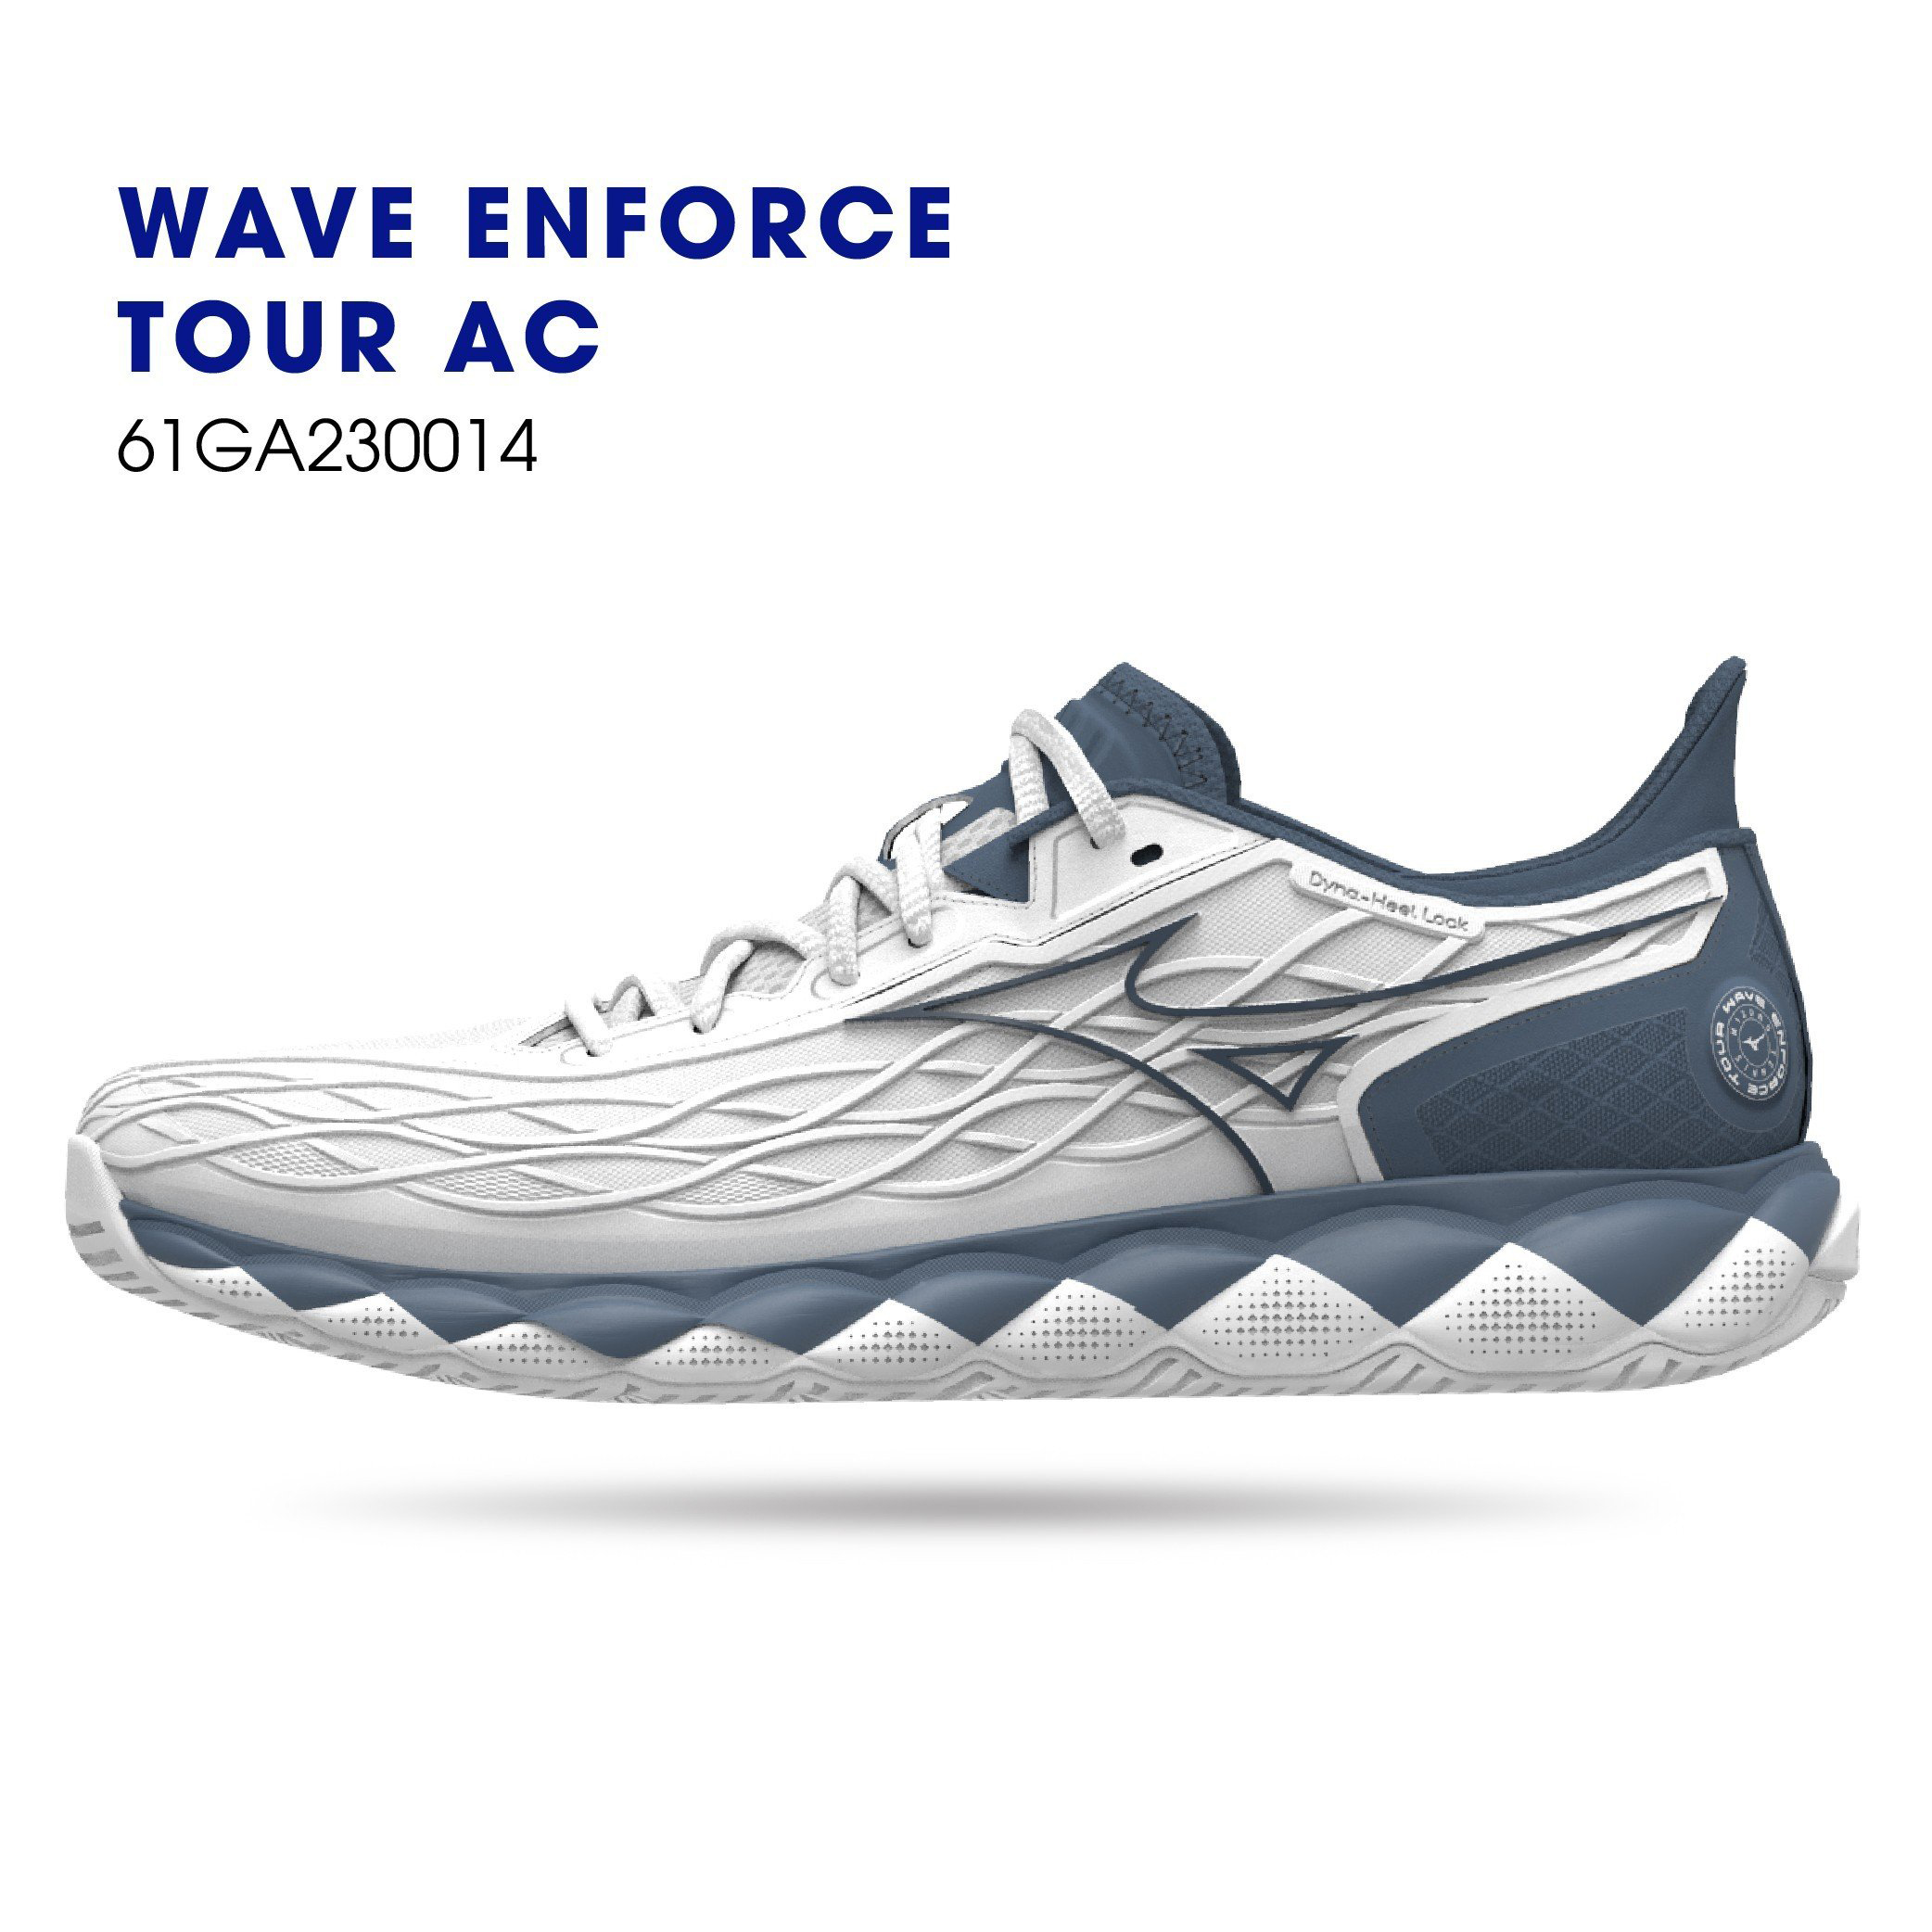 Giày Tennis Mizuno chính hãng Wave WAVE ENFORCE TOUR AC cực chất cho cả